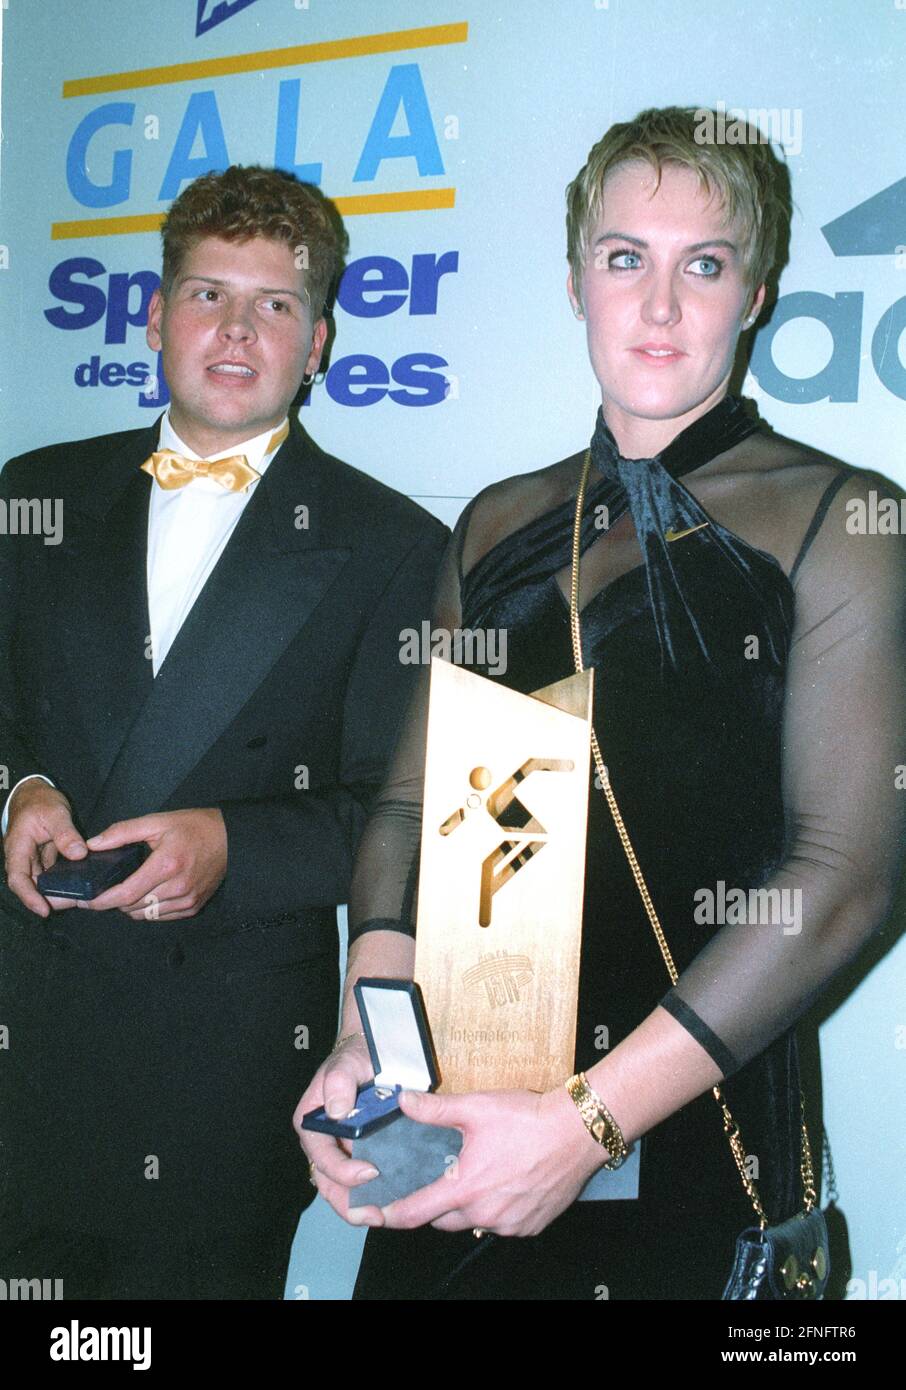 Gala sportif de l'année 1997 à Ludwigsburg : à gauche, le gagnant du Tour de France Jan Ullrich et Astrid Kumbernuss (tourné en put) 07.12.1997 [traduction automatique] Banque D'Images